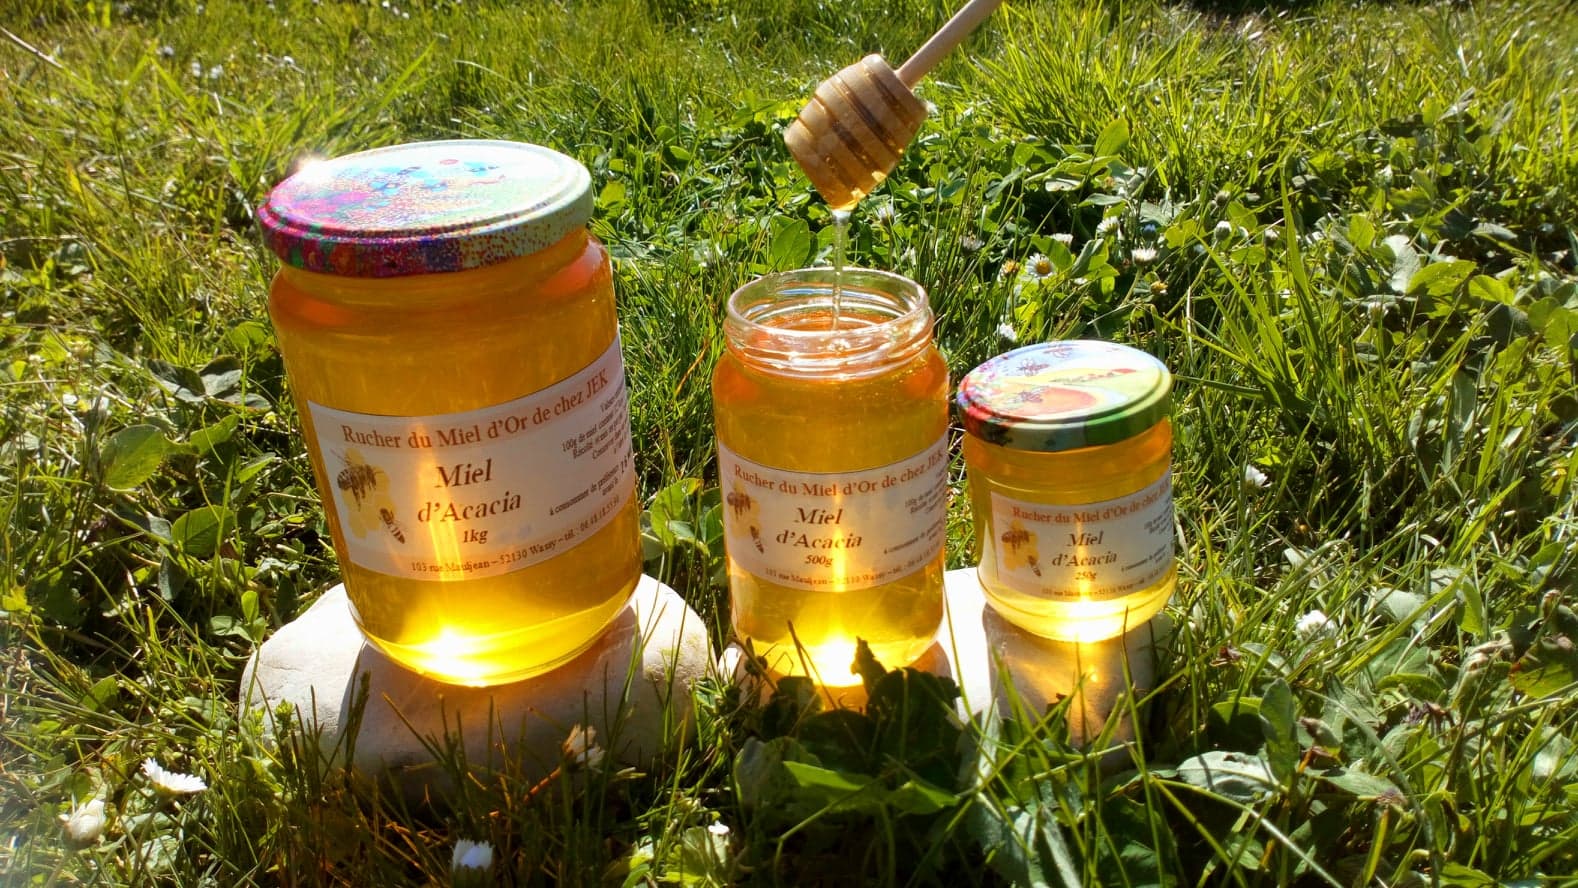 miel d'acacia 1kg 